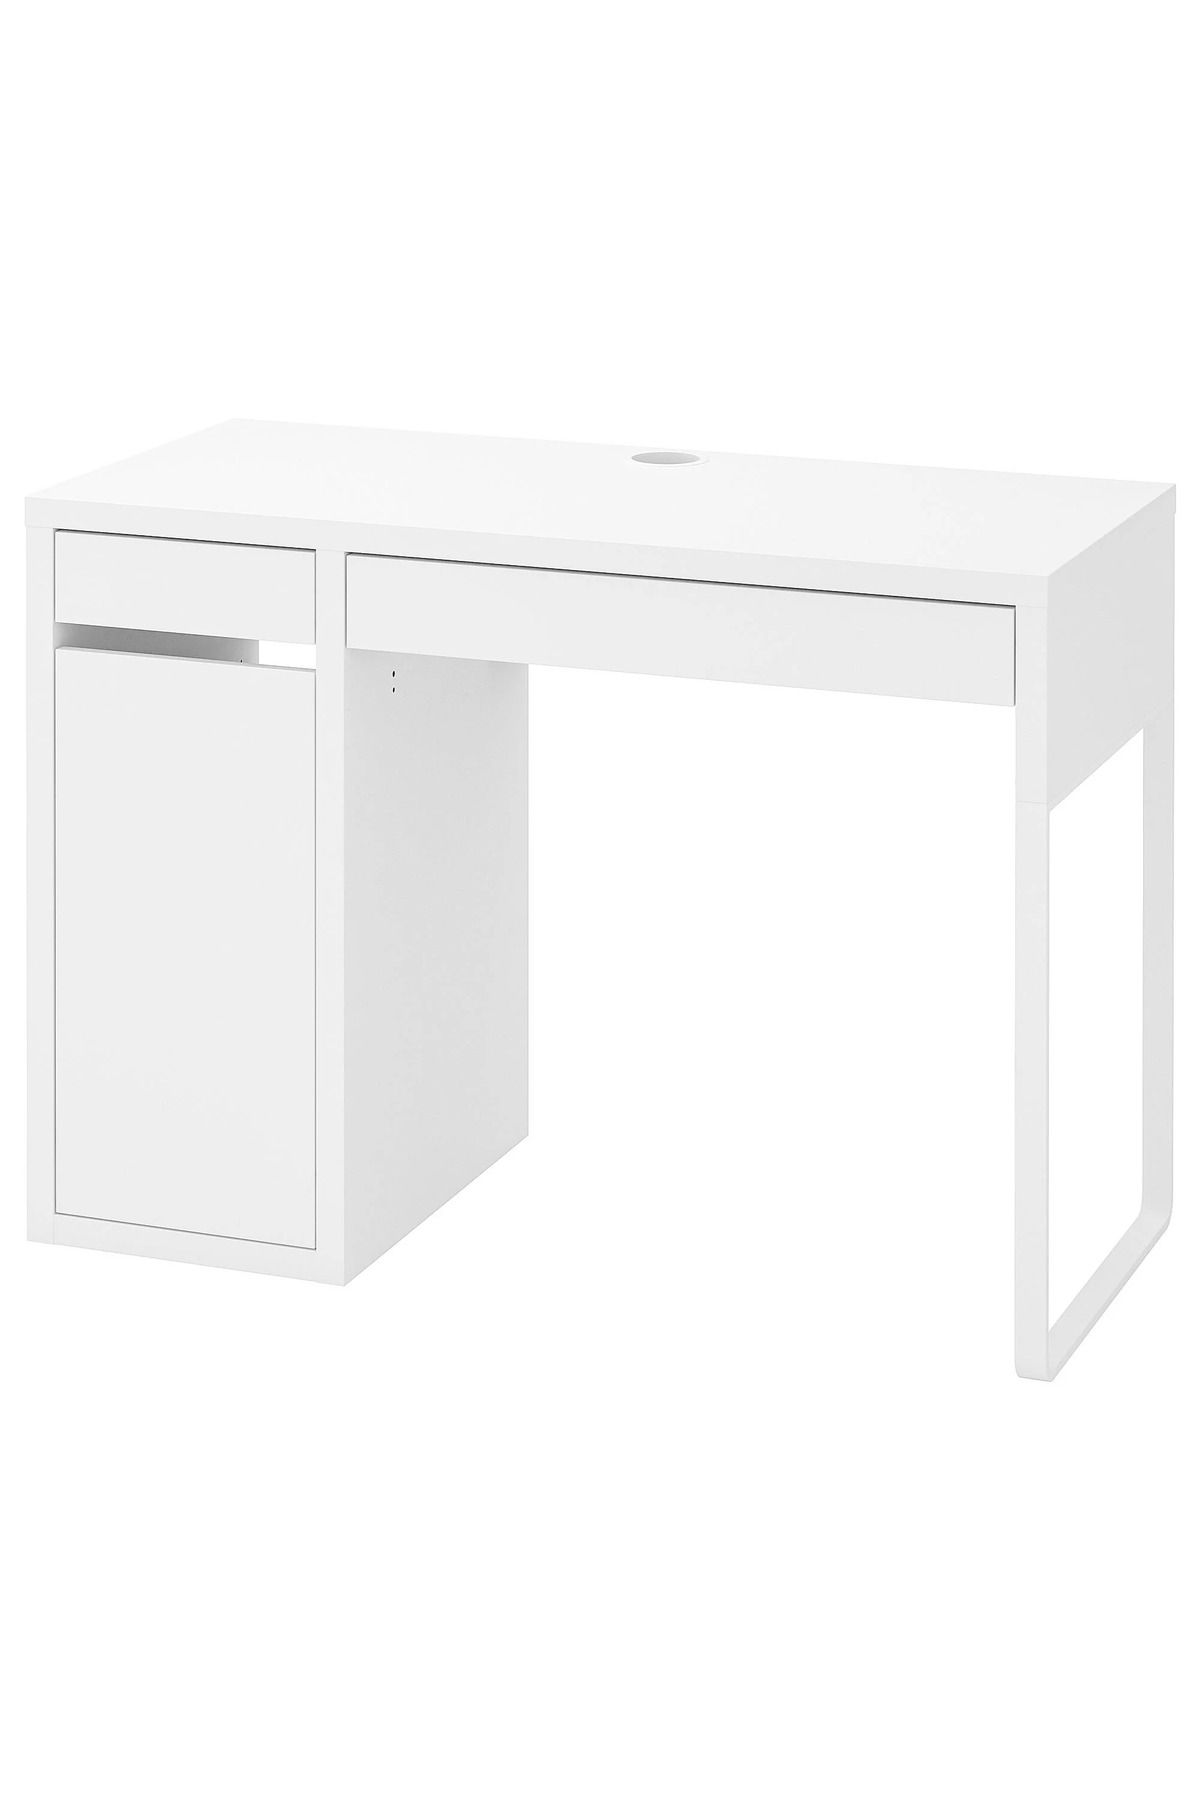 IKEA Çekmeceli Çalışma Masası 105x50cm bilgisayar masası, ofis masası